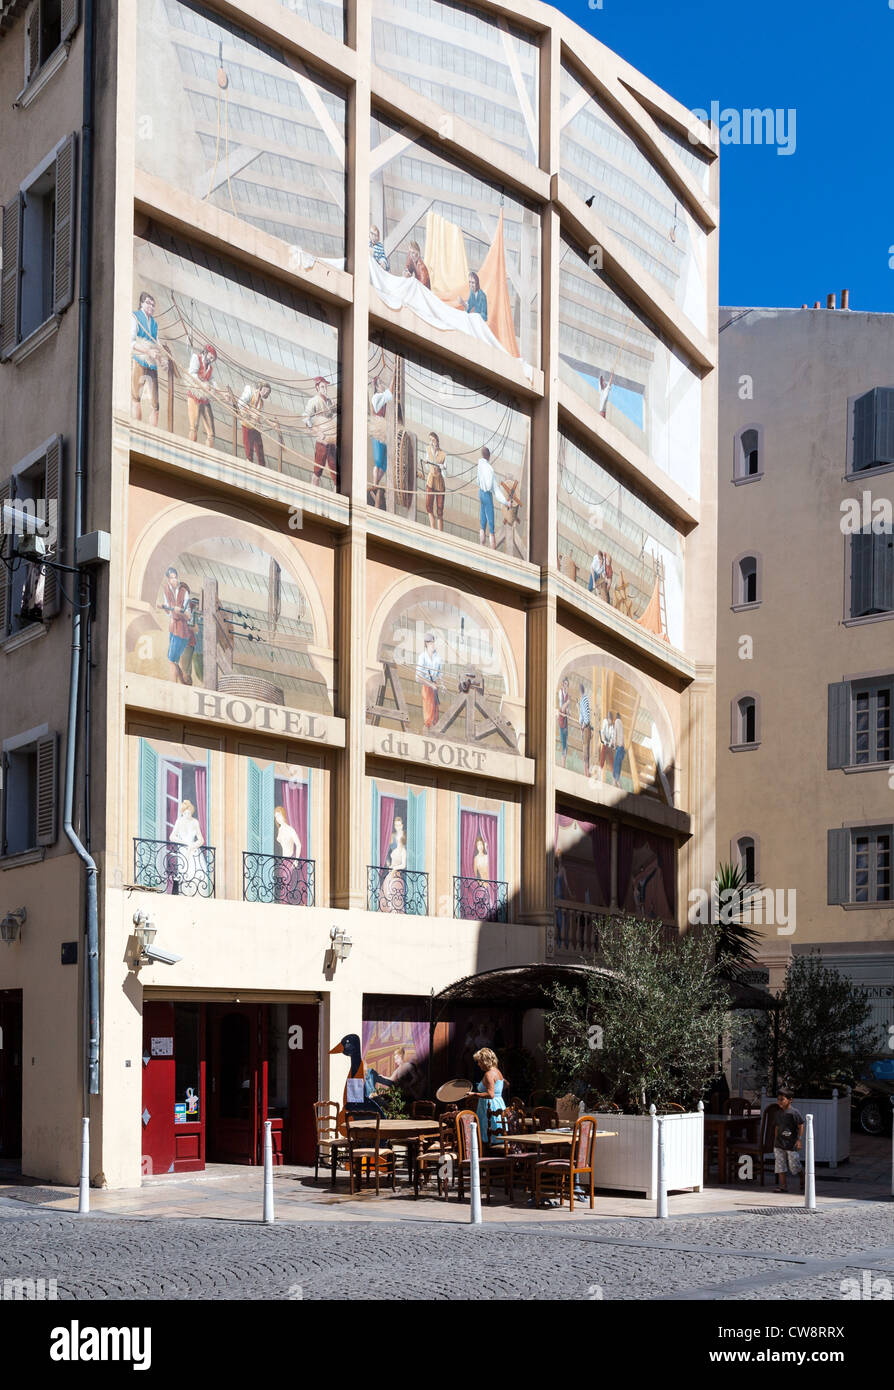 France, Toulon, peintures murales de l'Hôtel du Port dans le centre du pays Banque D'Images